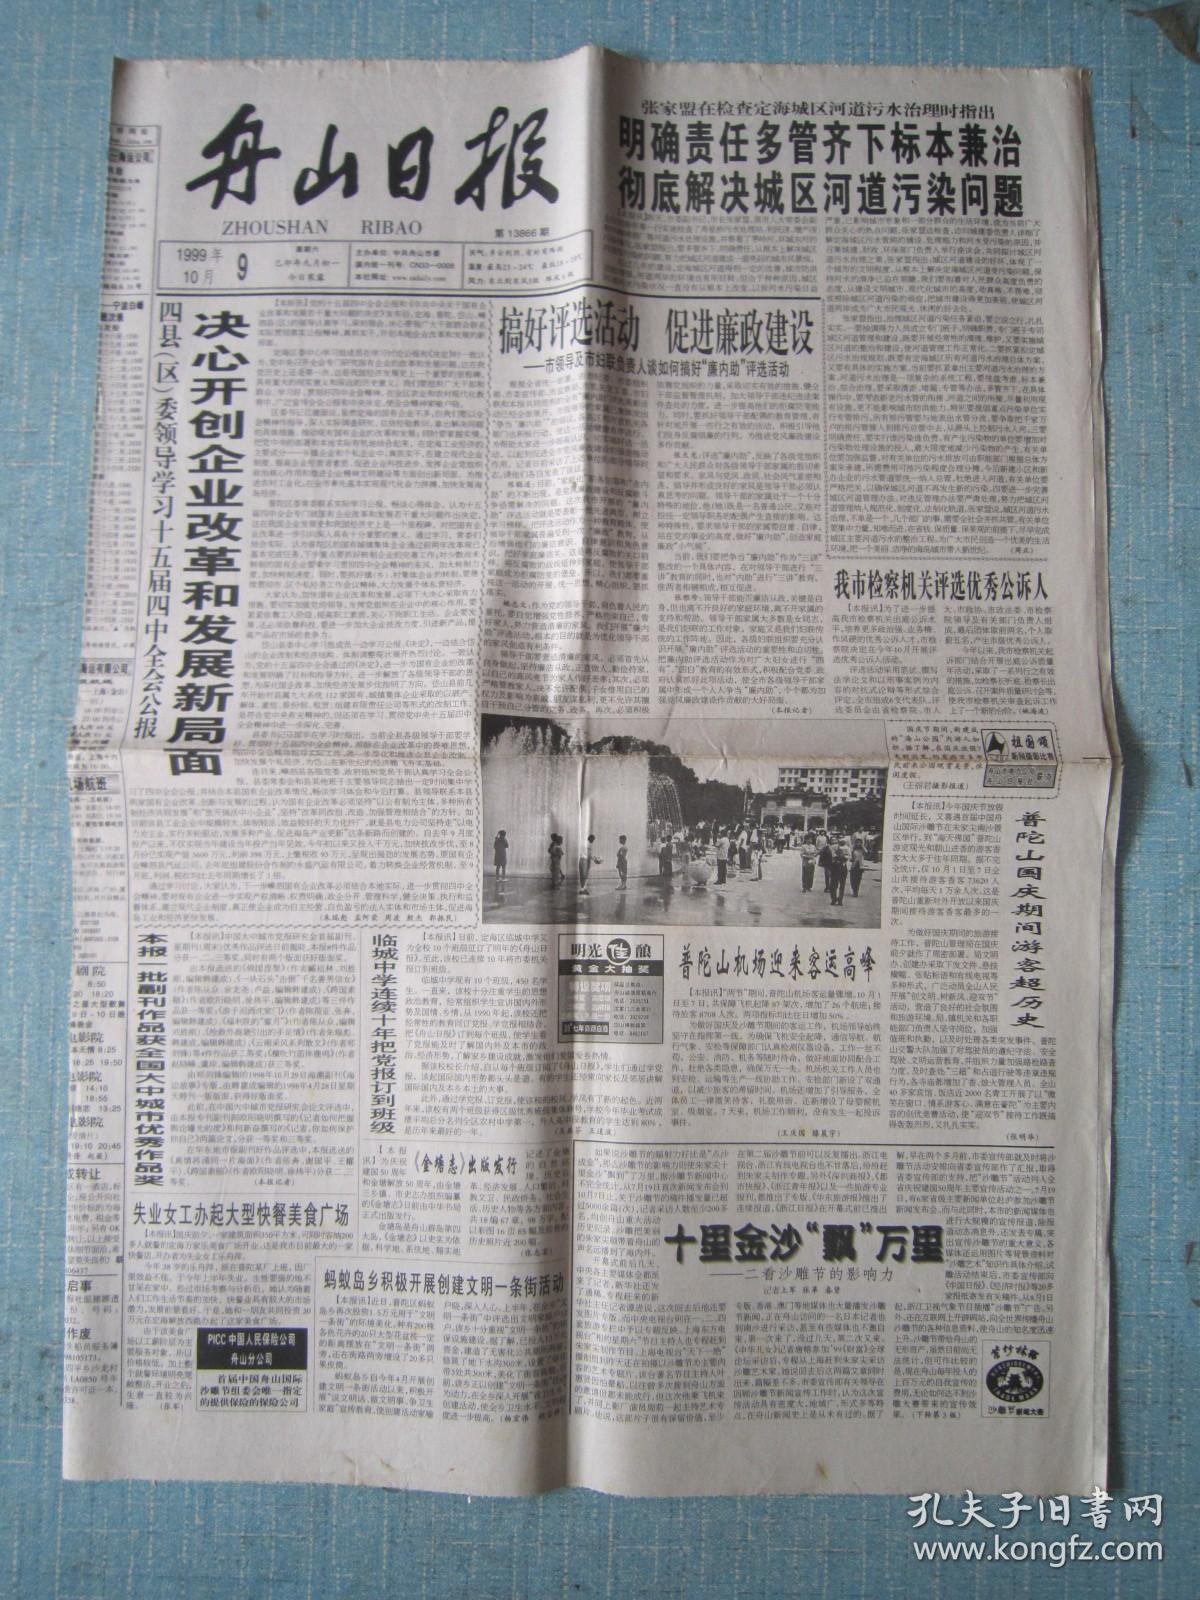 浙江普报——舟山日报 1999.10.9日